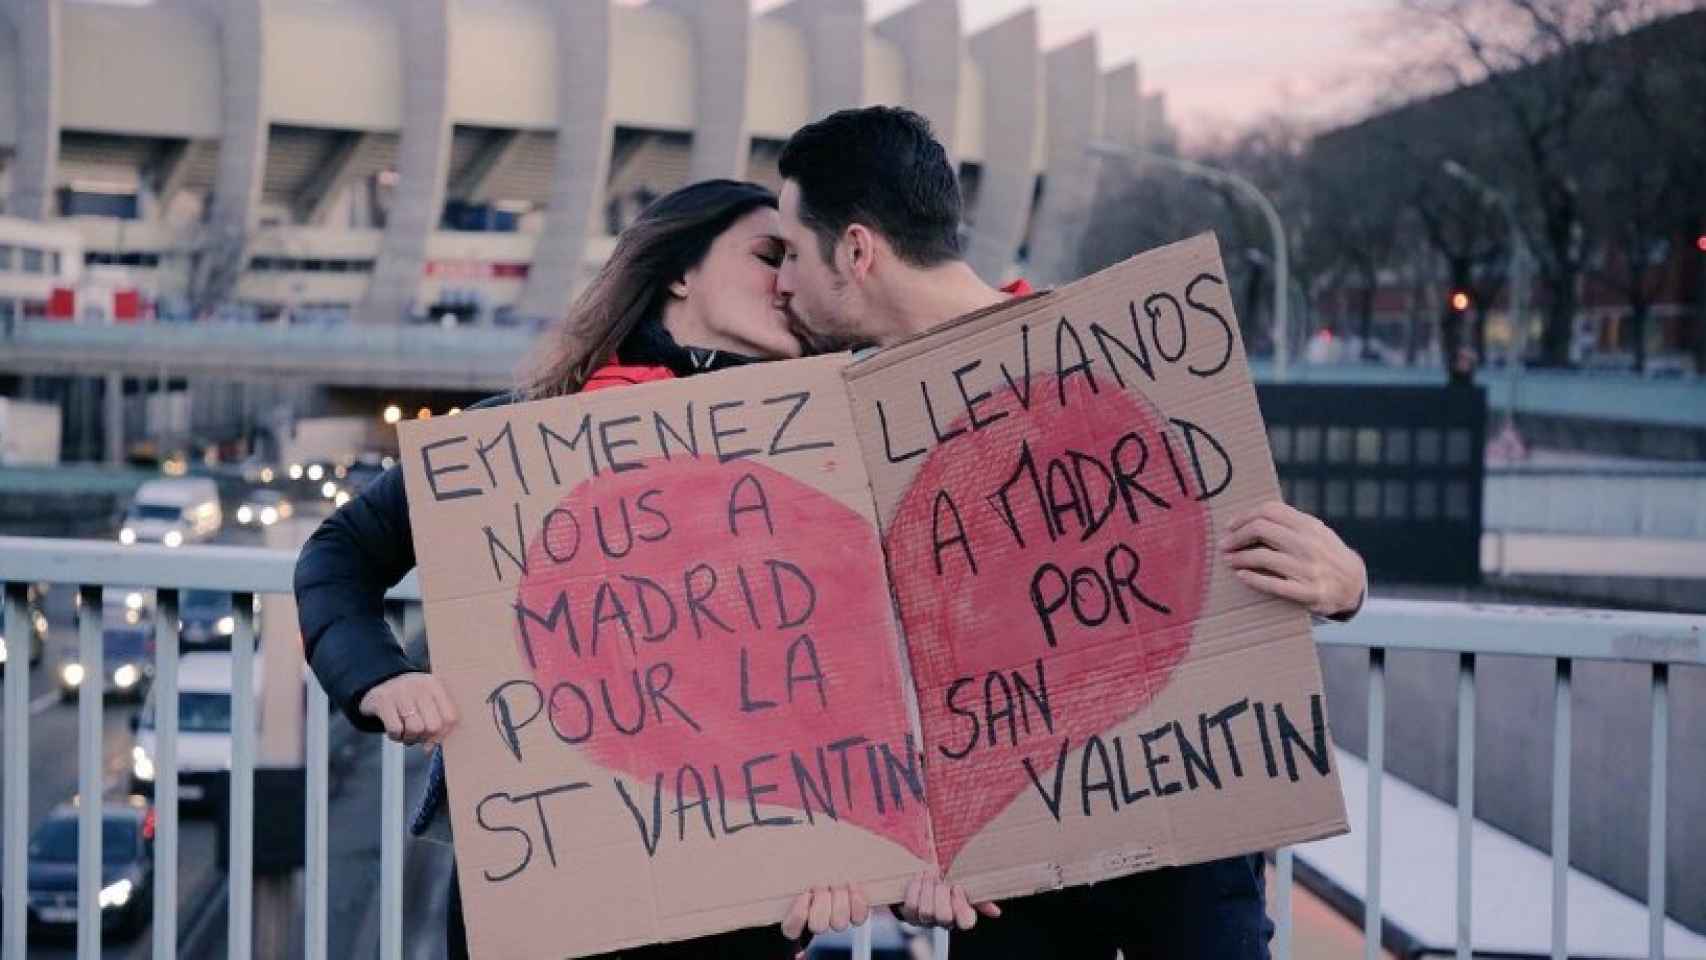 Pareja seguidora del PSG viaja hasta Madrid por San Valentín haciendo autostop. Foto: Twitter (@PGS_inside)